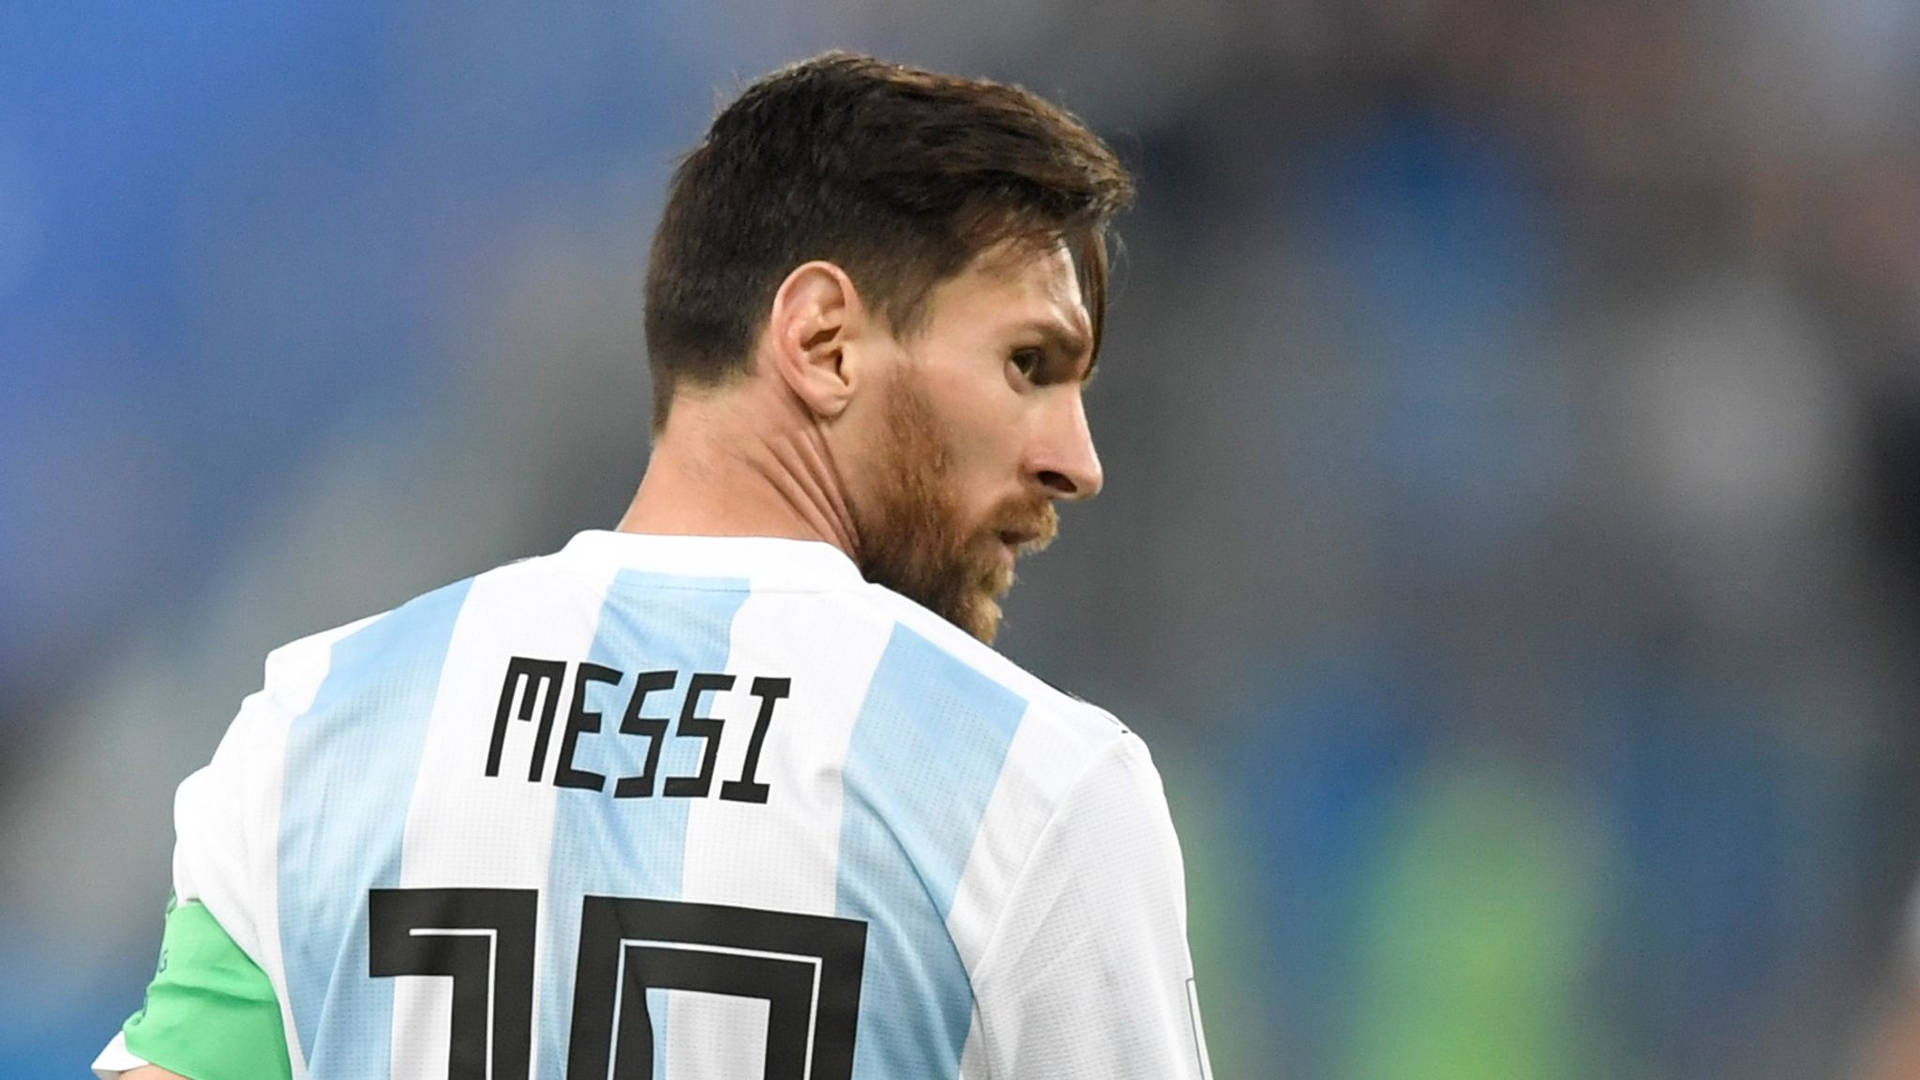 Messi2021 Em Retrospectiva. Papel de Parede